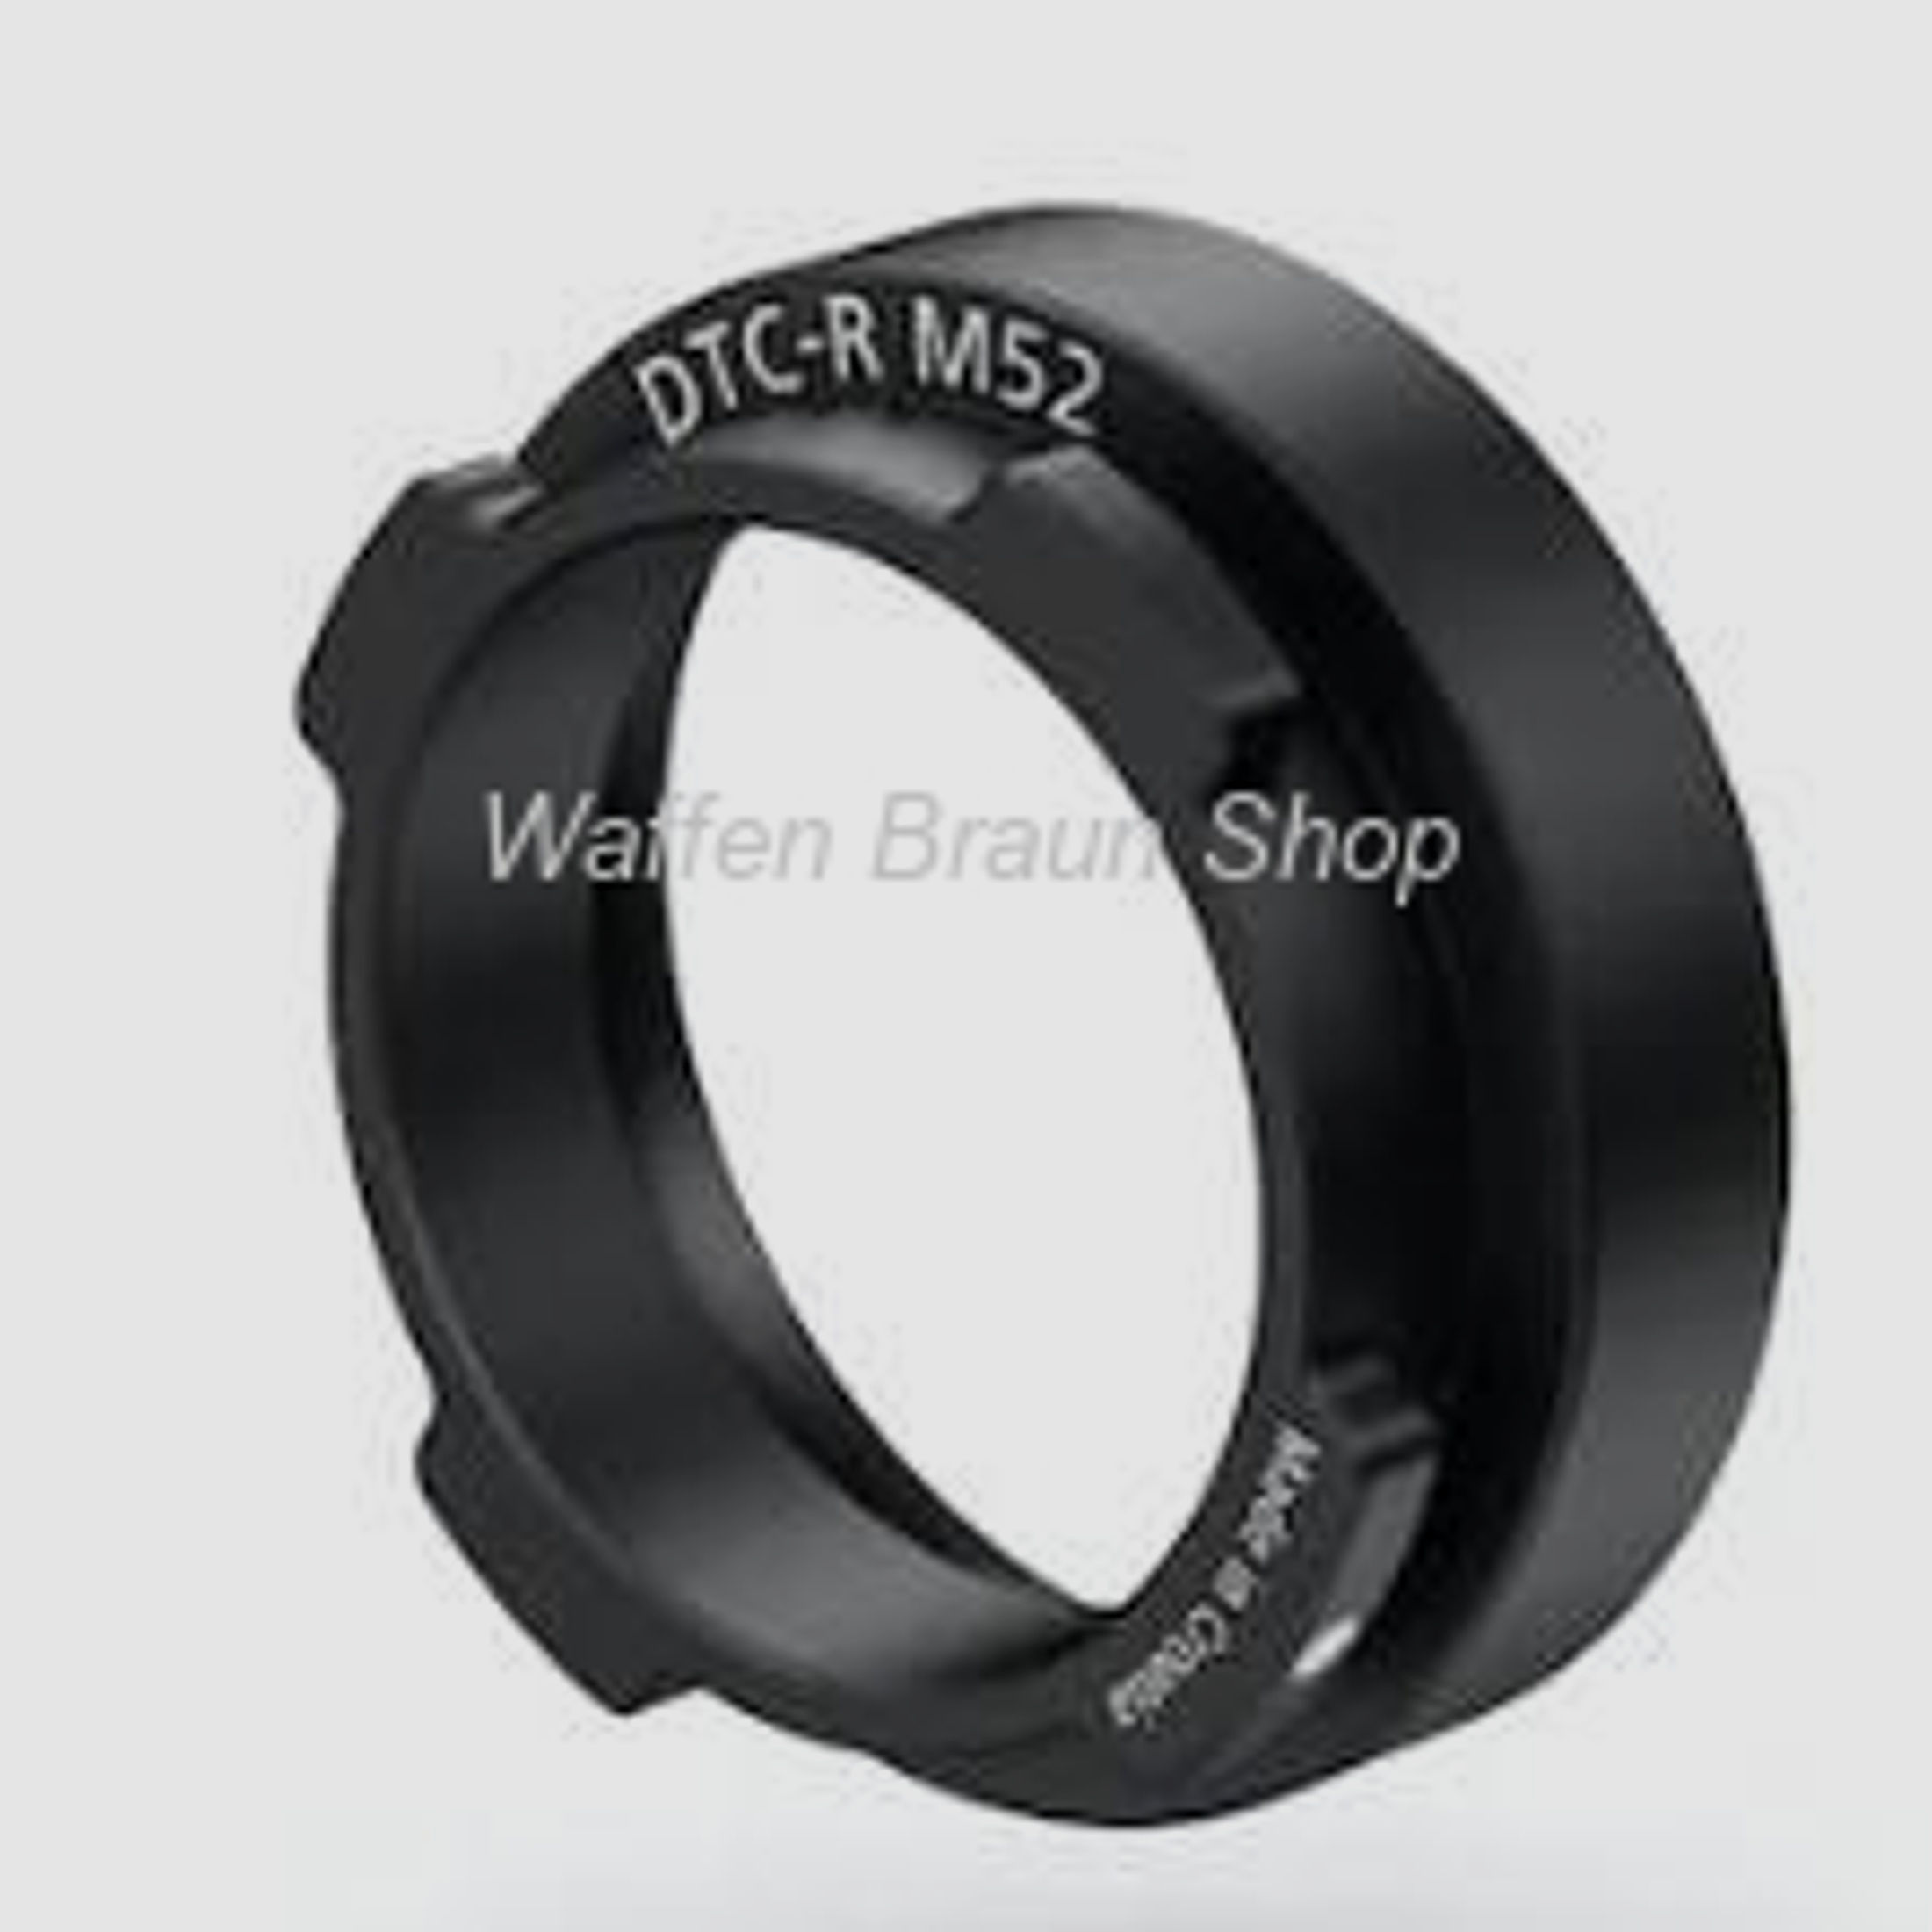 DTC-Ring M52 für Vorsatzgerät